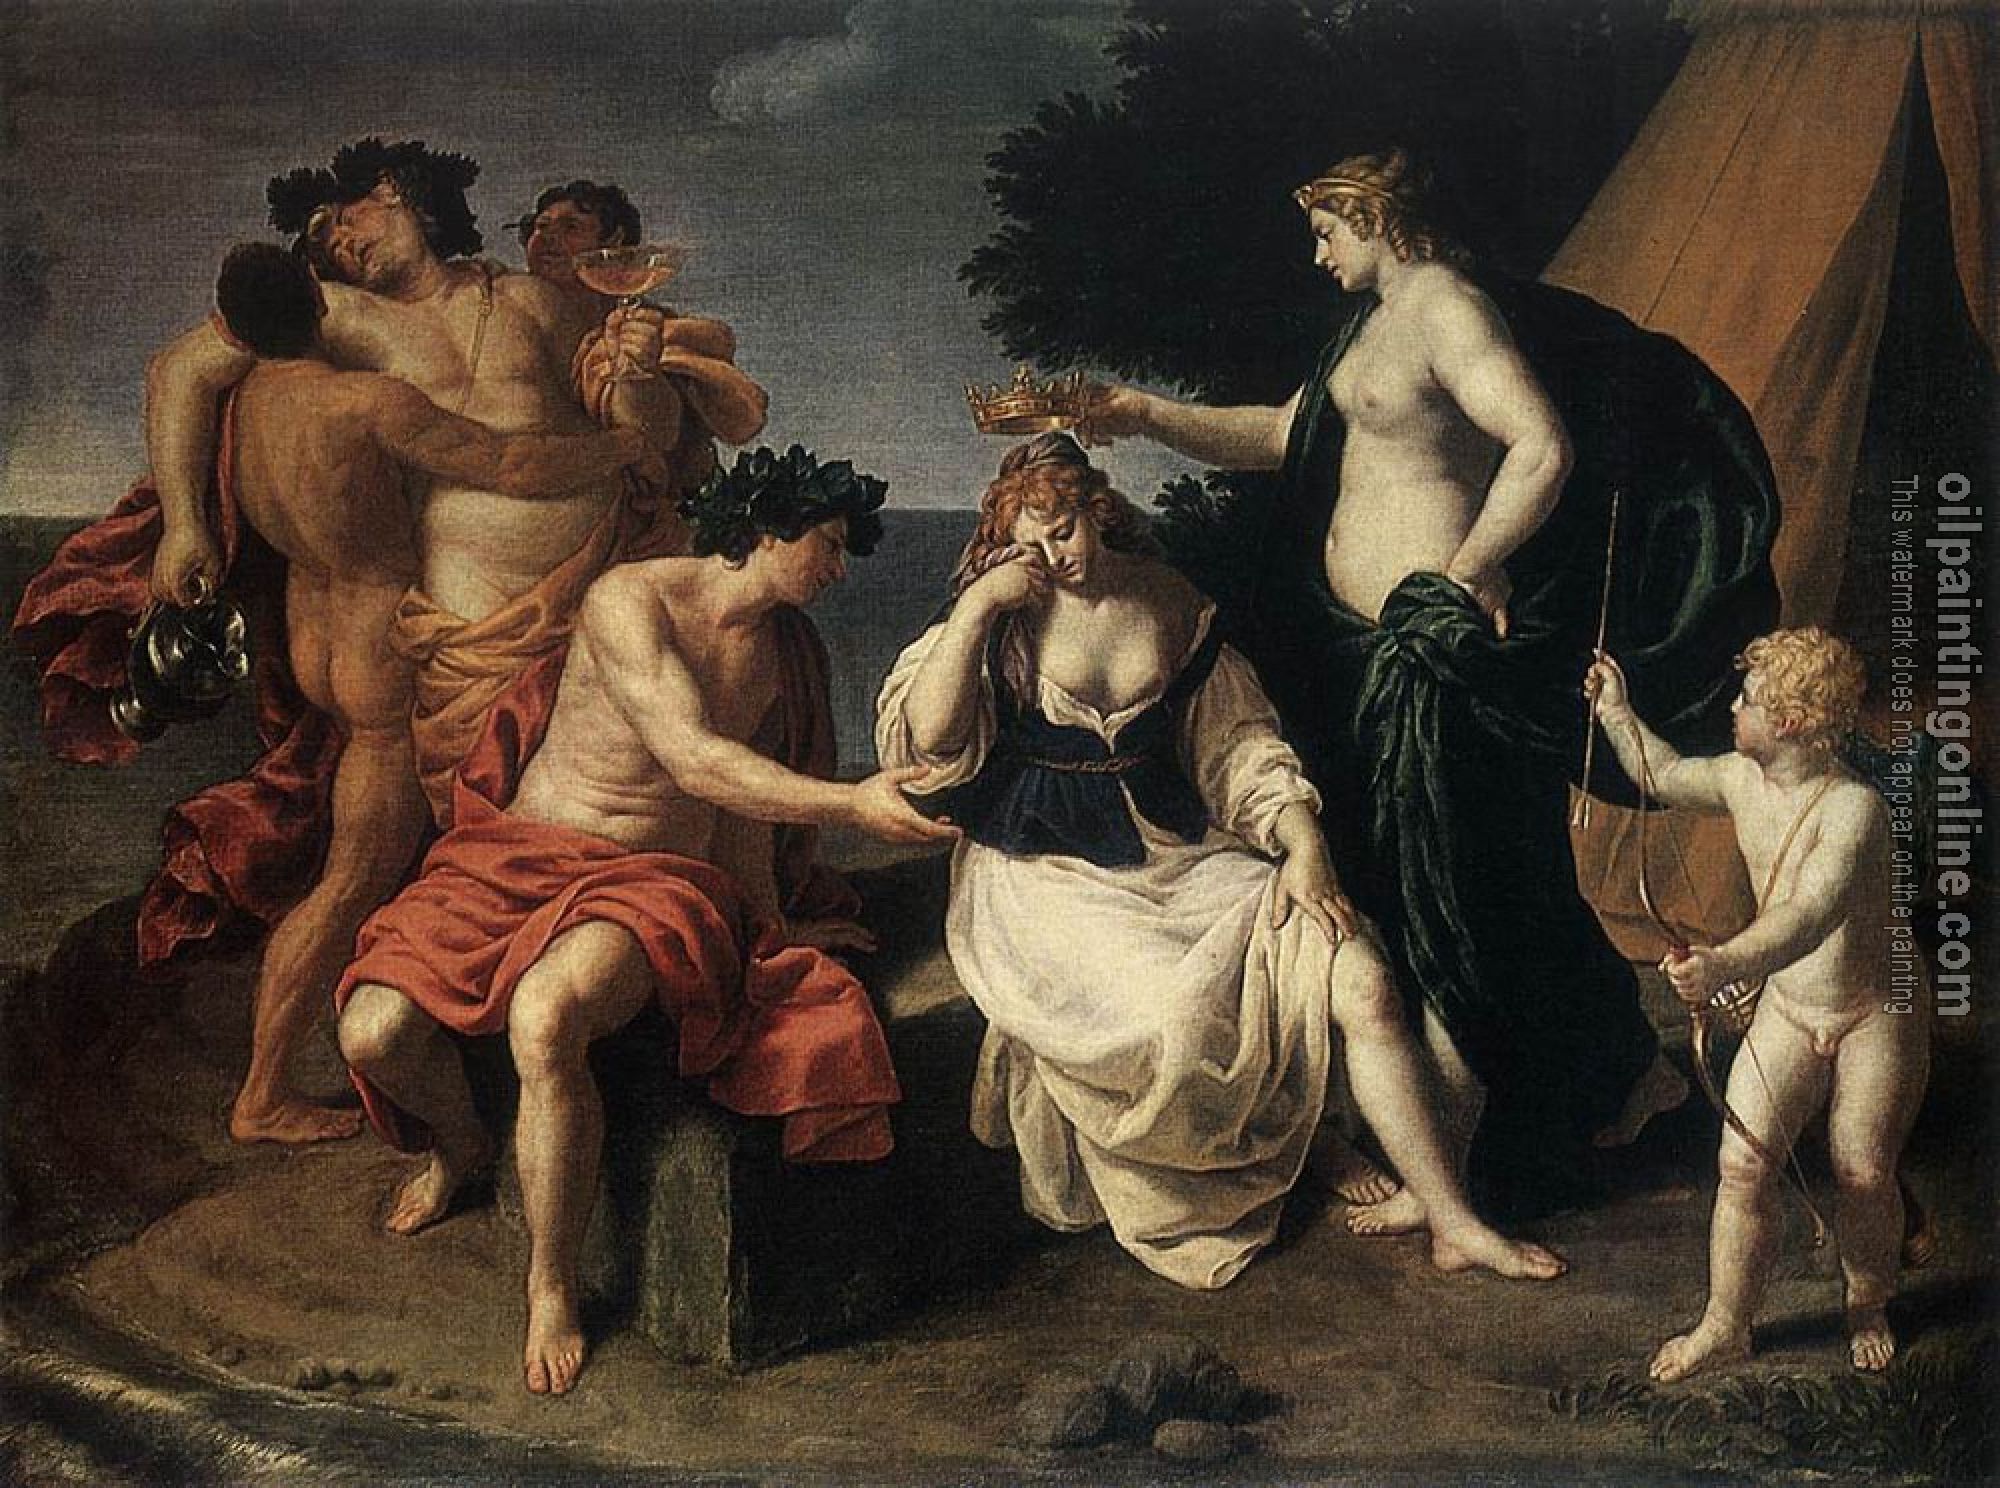 Turchi, Alessandro - Bacchus and Ariadne